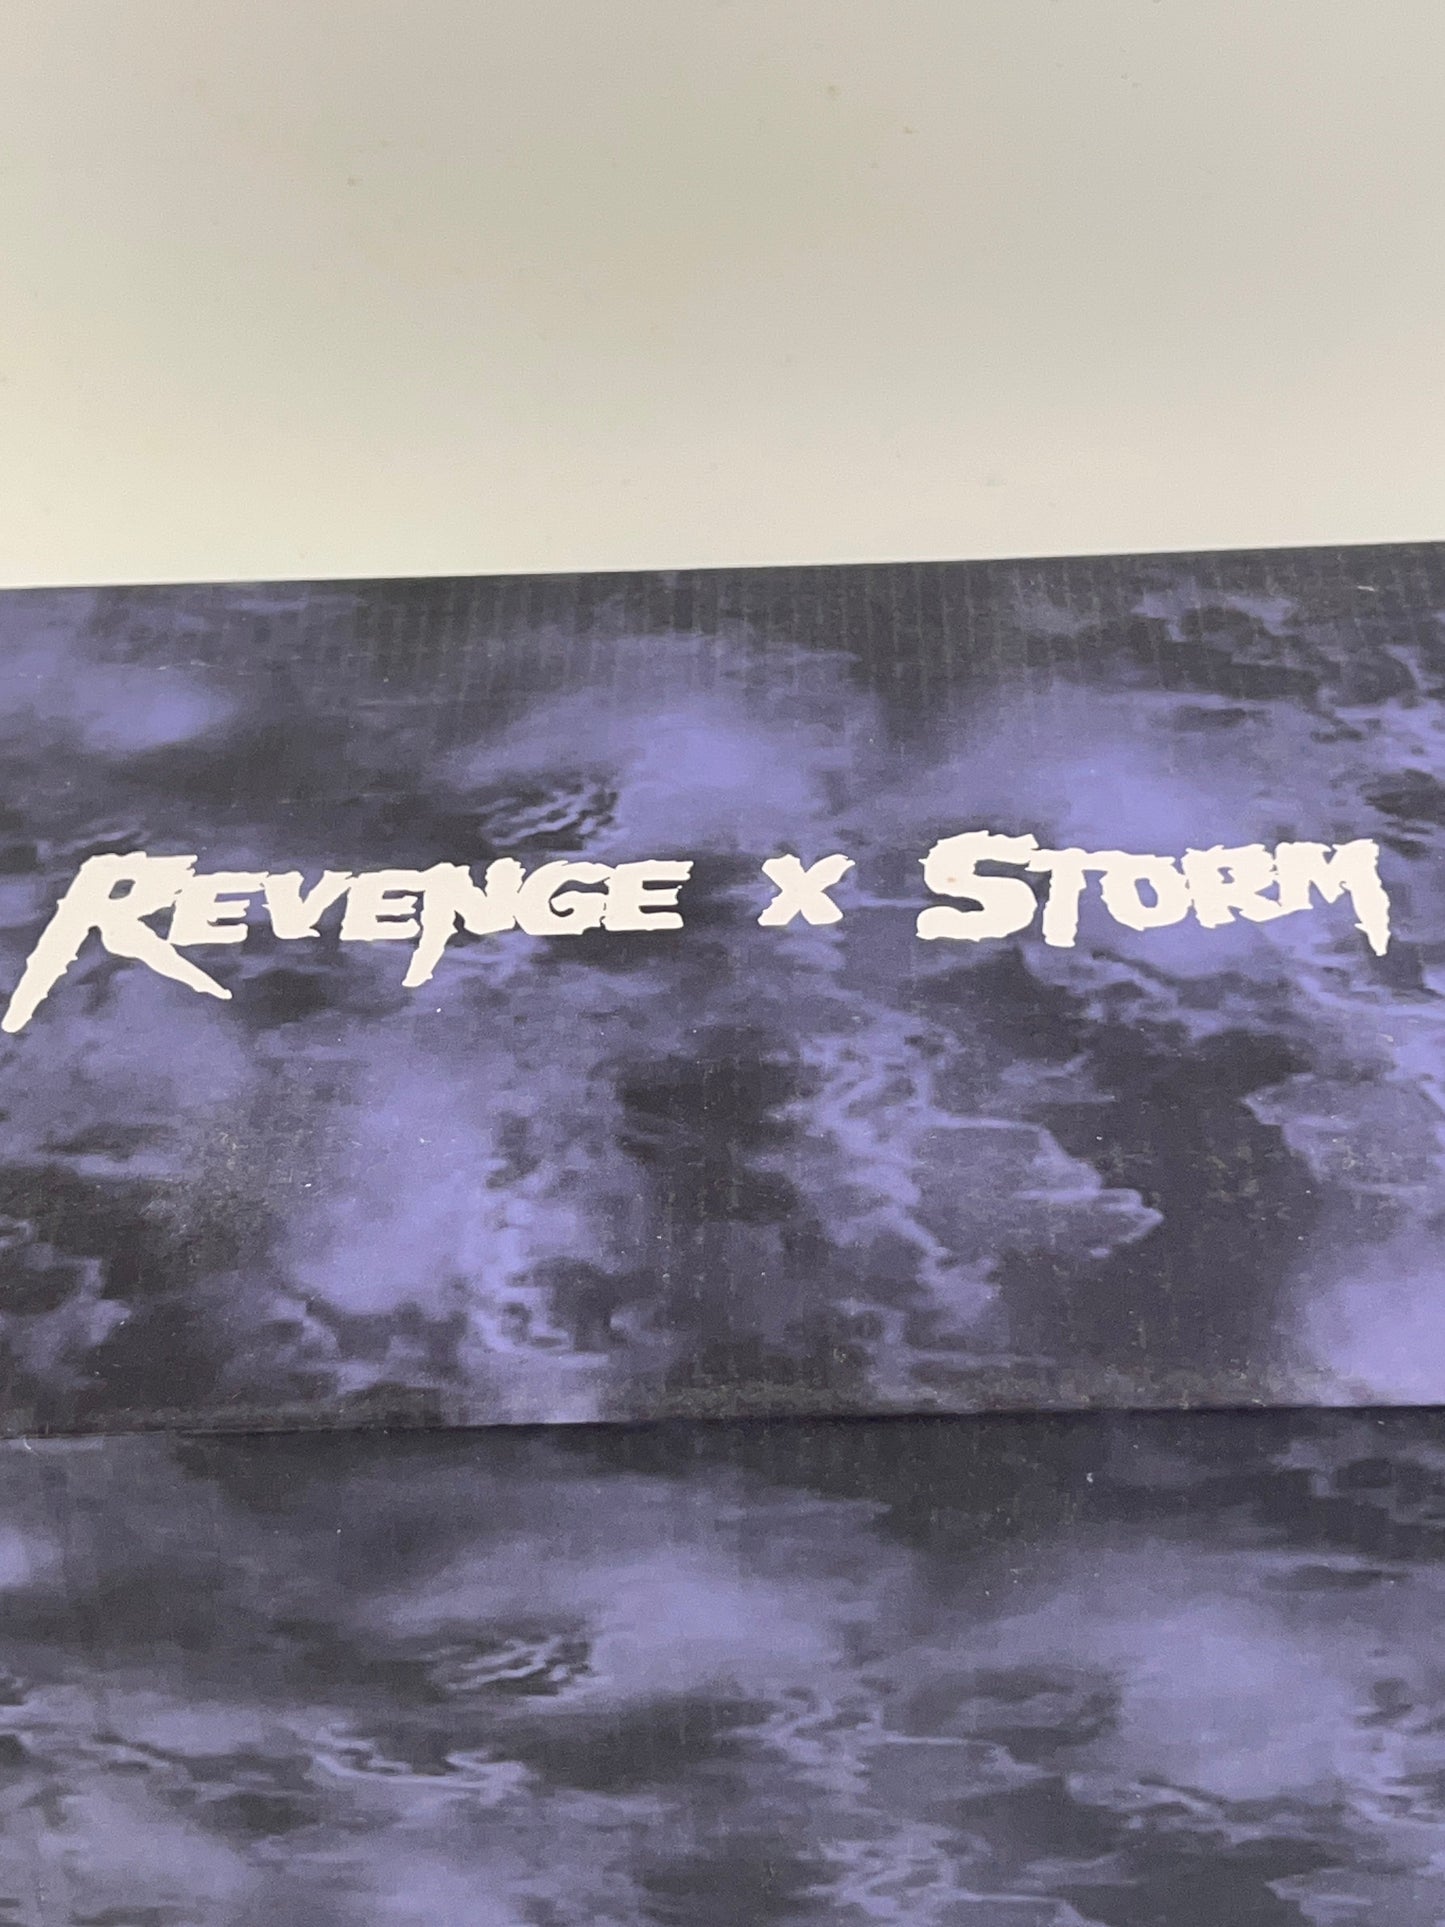 Revenge x Storm Size 13 Vol. 2 Black/ White 100% Authentic Newest Release NIB